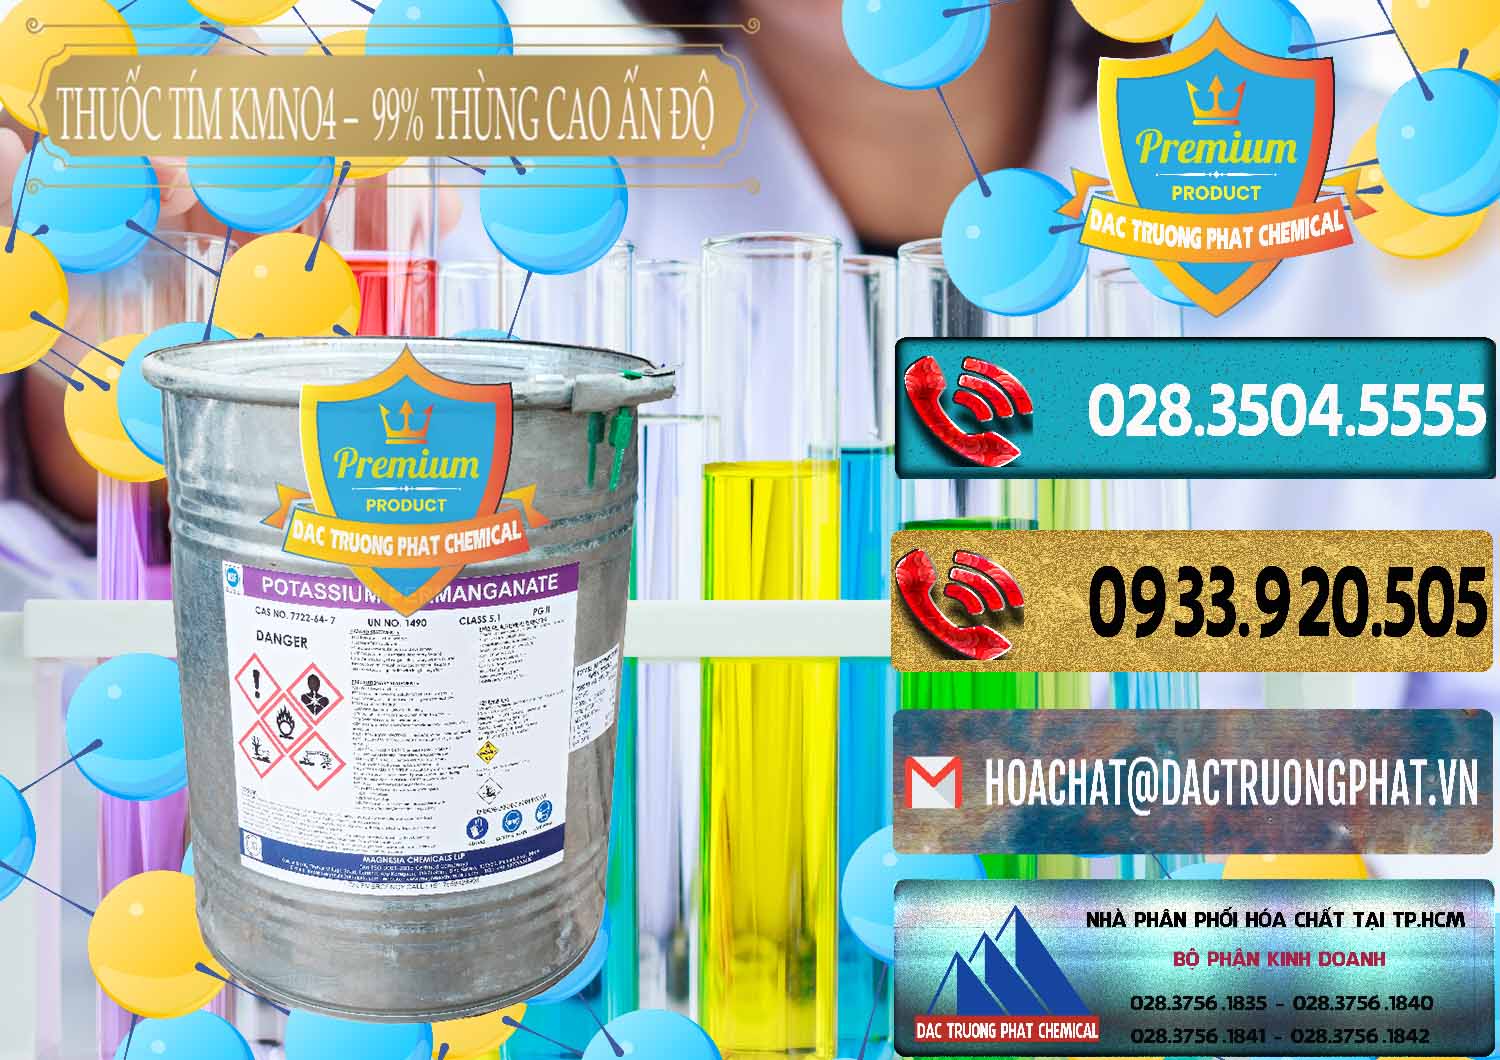 Nơi bán _ cung cấp Thuốc Tím - KMNO4 Thùng Cao 99% Magnesia Chemicals Ấn Độ India - 0164 - Chuyên kinh doanh & phân phối hóa chất tại TP.HCM - hoachatdetnhuom.com